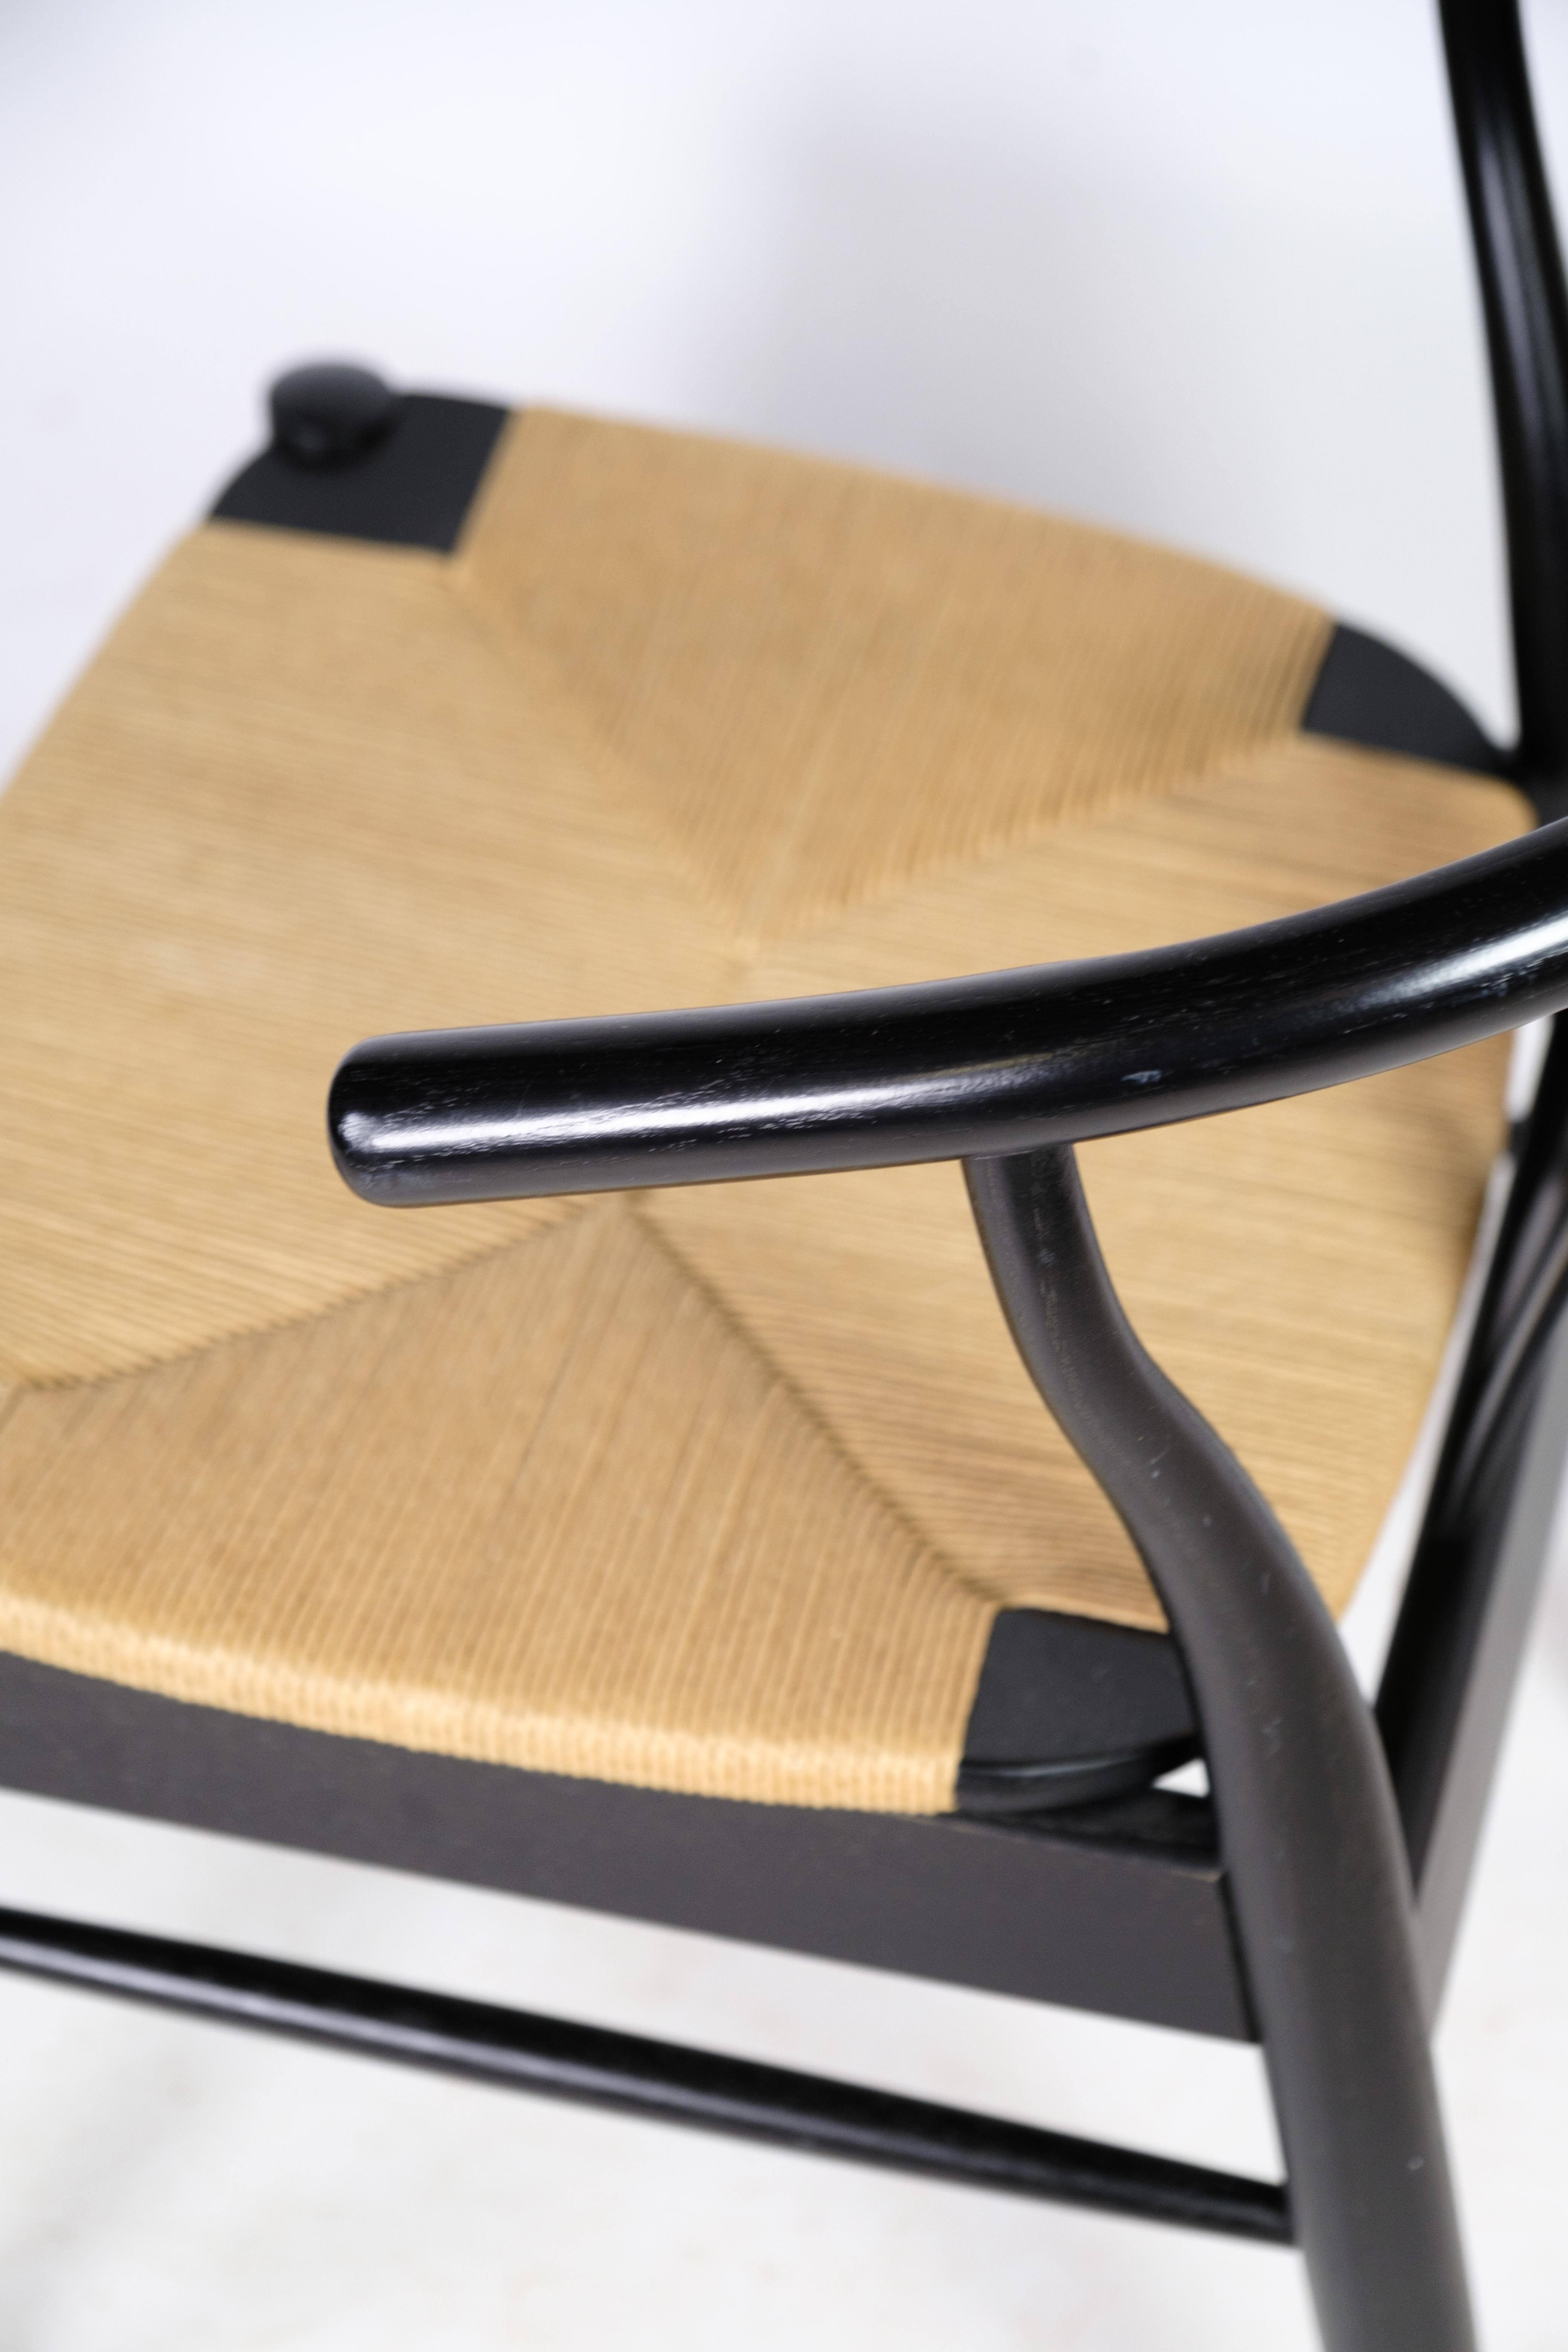 Ein Paar Stühle im nordischen Design mit natürlichem Geflechtsitz aus schwarz lackiertem Buchenholz von Findahl Møbelfabrik. Beide Stühle sind in sehr gutem Zustand.
Maße in cm: H:76 B:54 T:44.5 SH:45

Dieses Produkt wird in unserer Fachwerkstatt